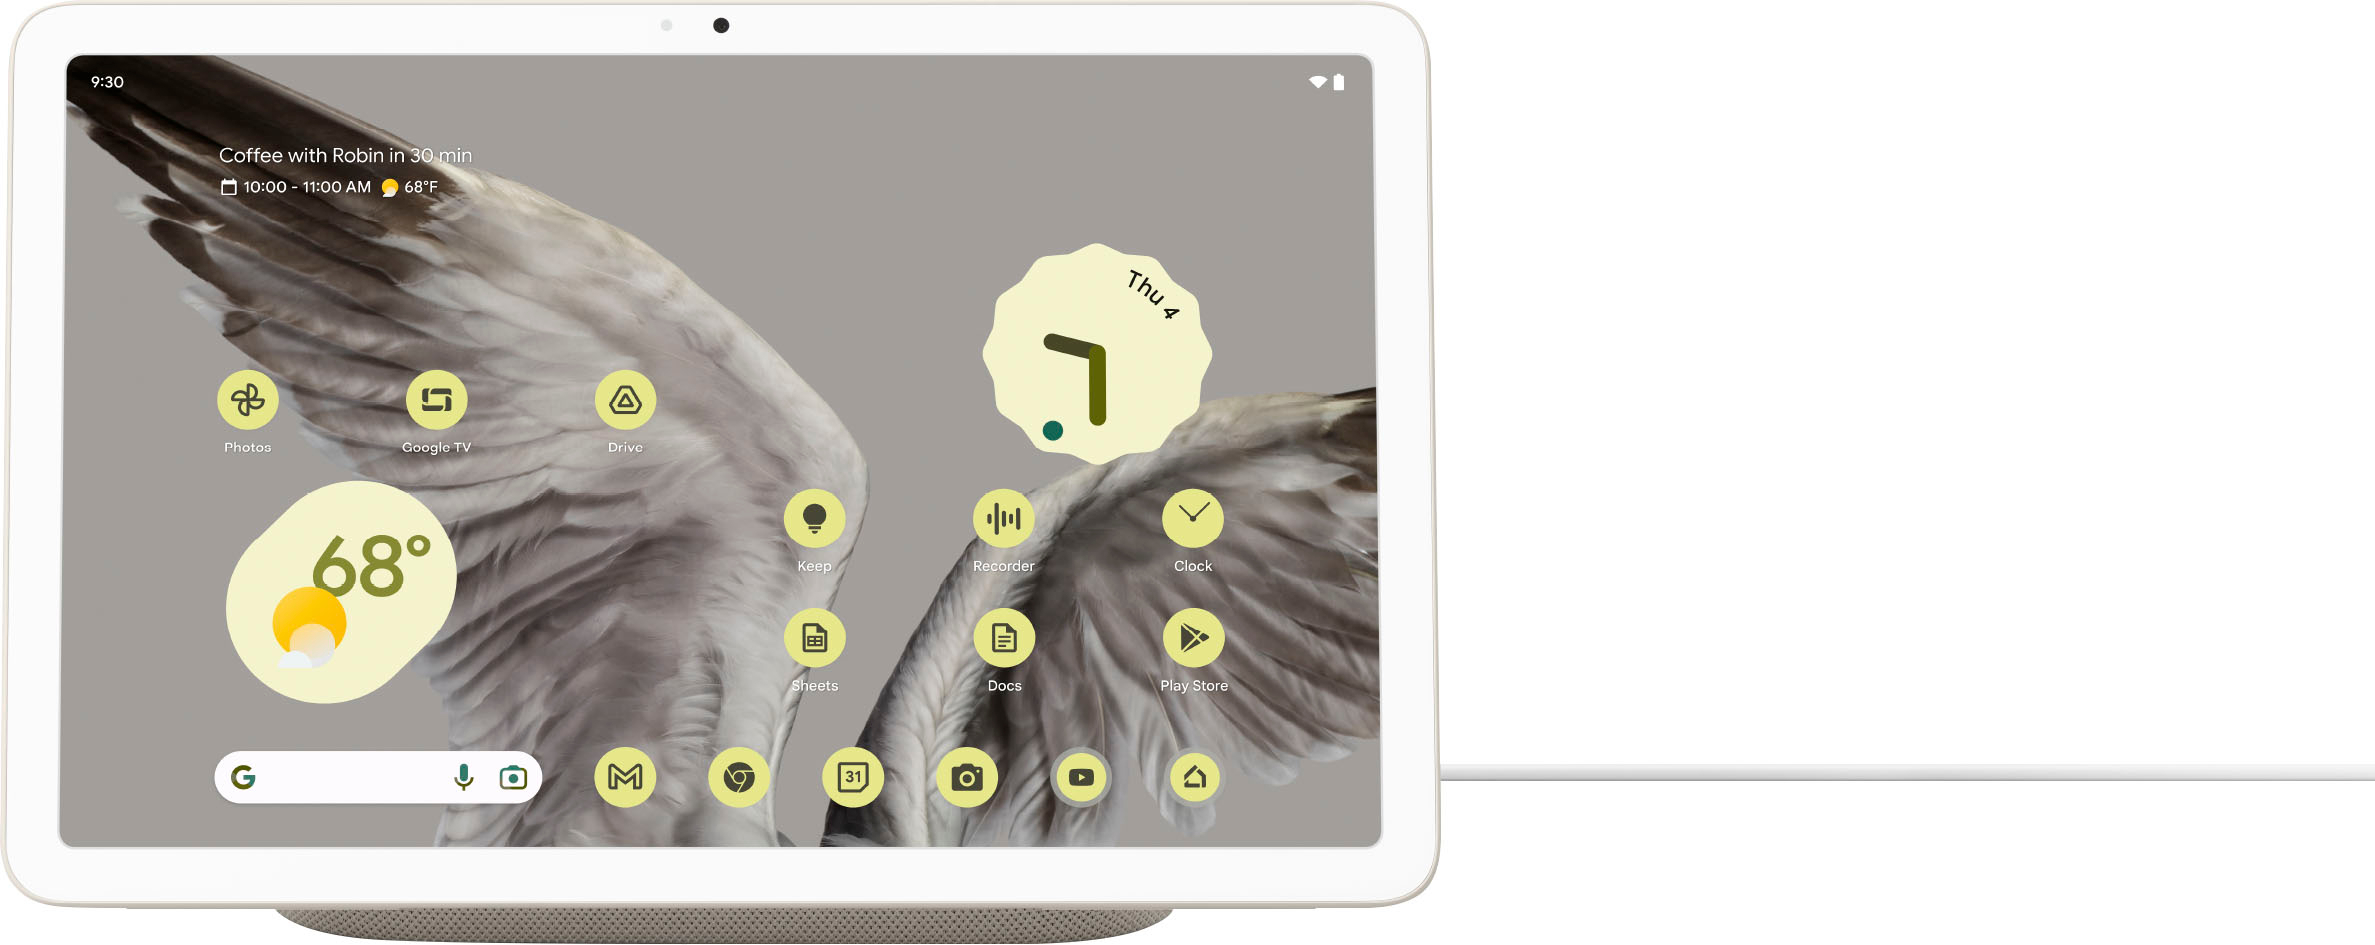 Google Pixel Tablet - 11 Pouces - 128Go - Noisette